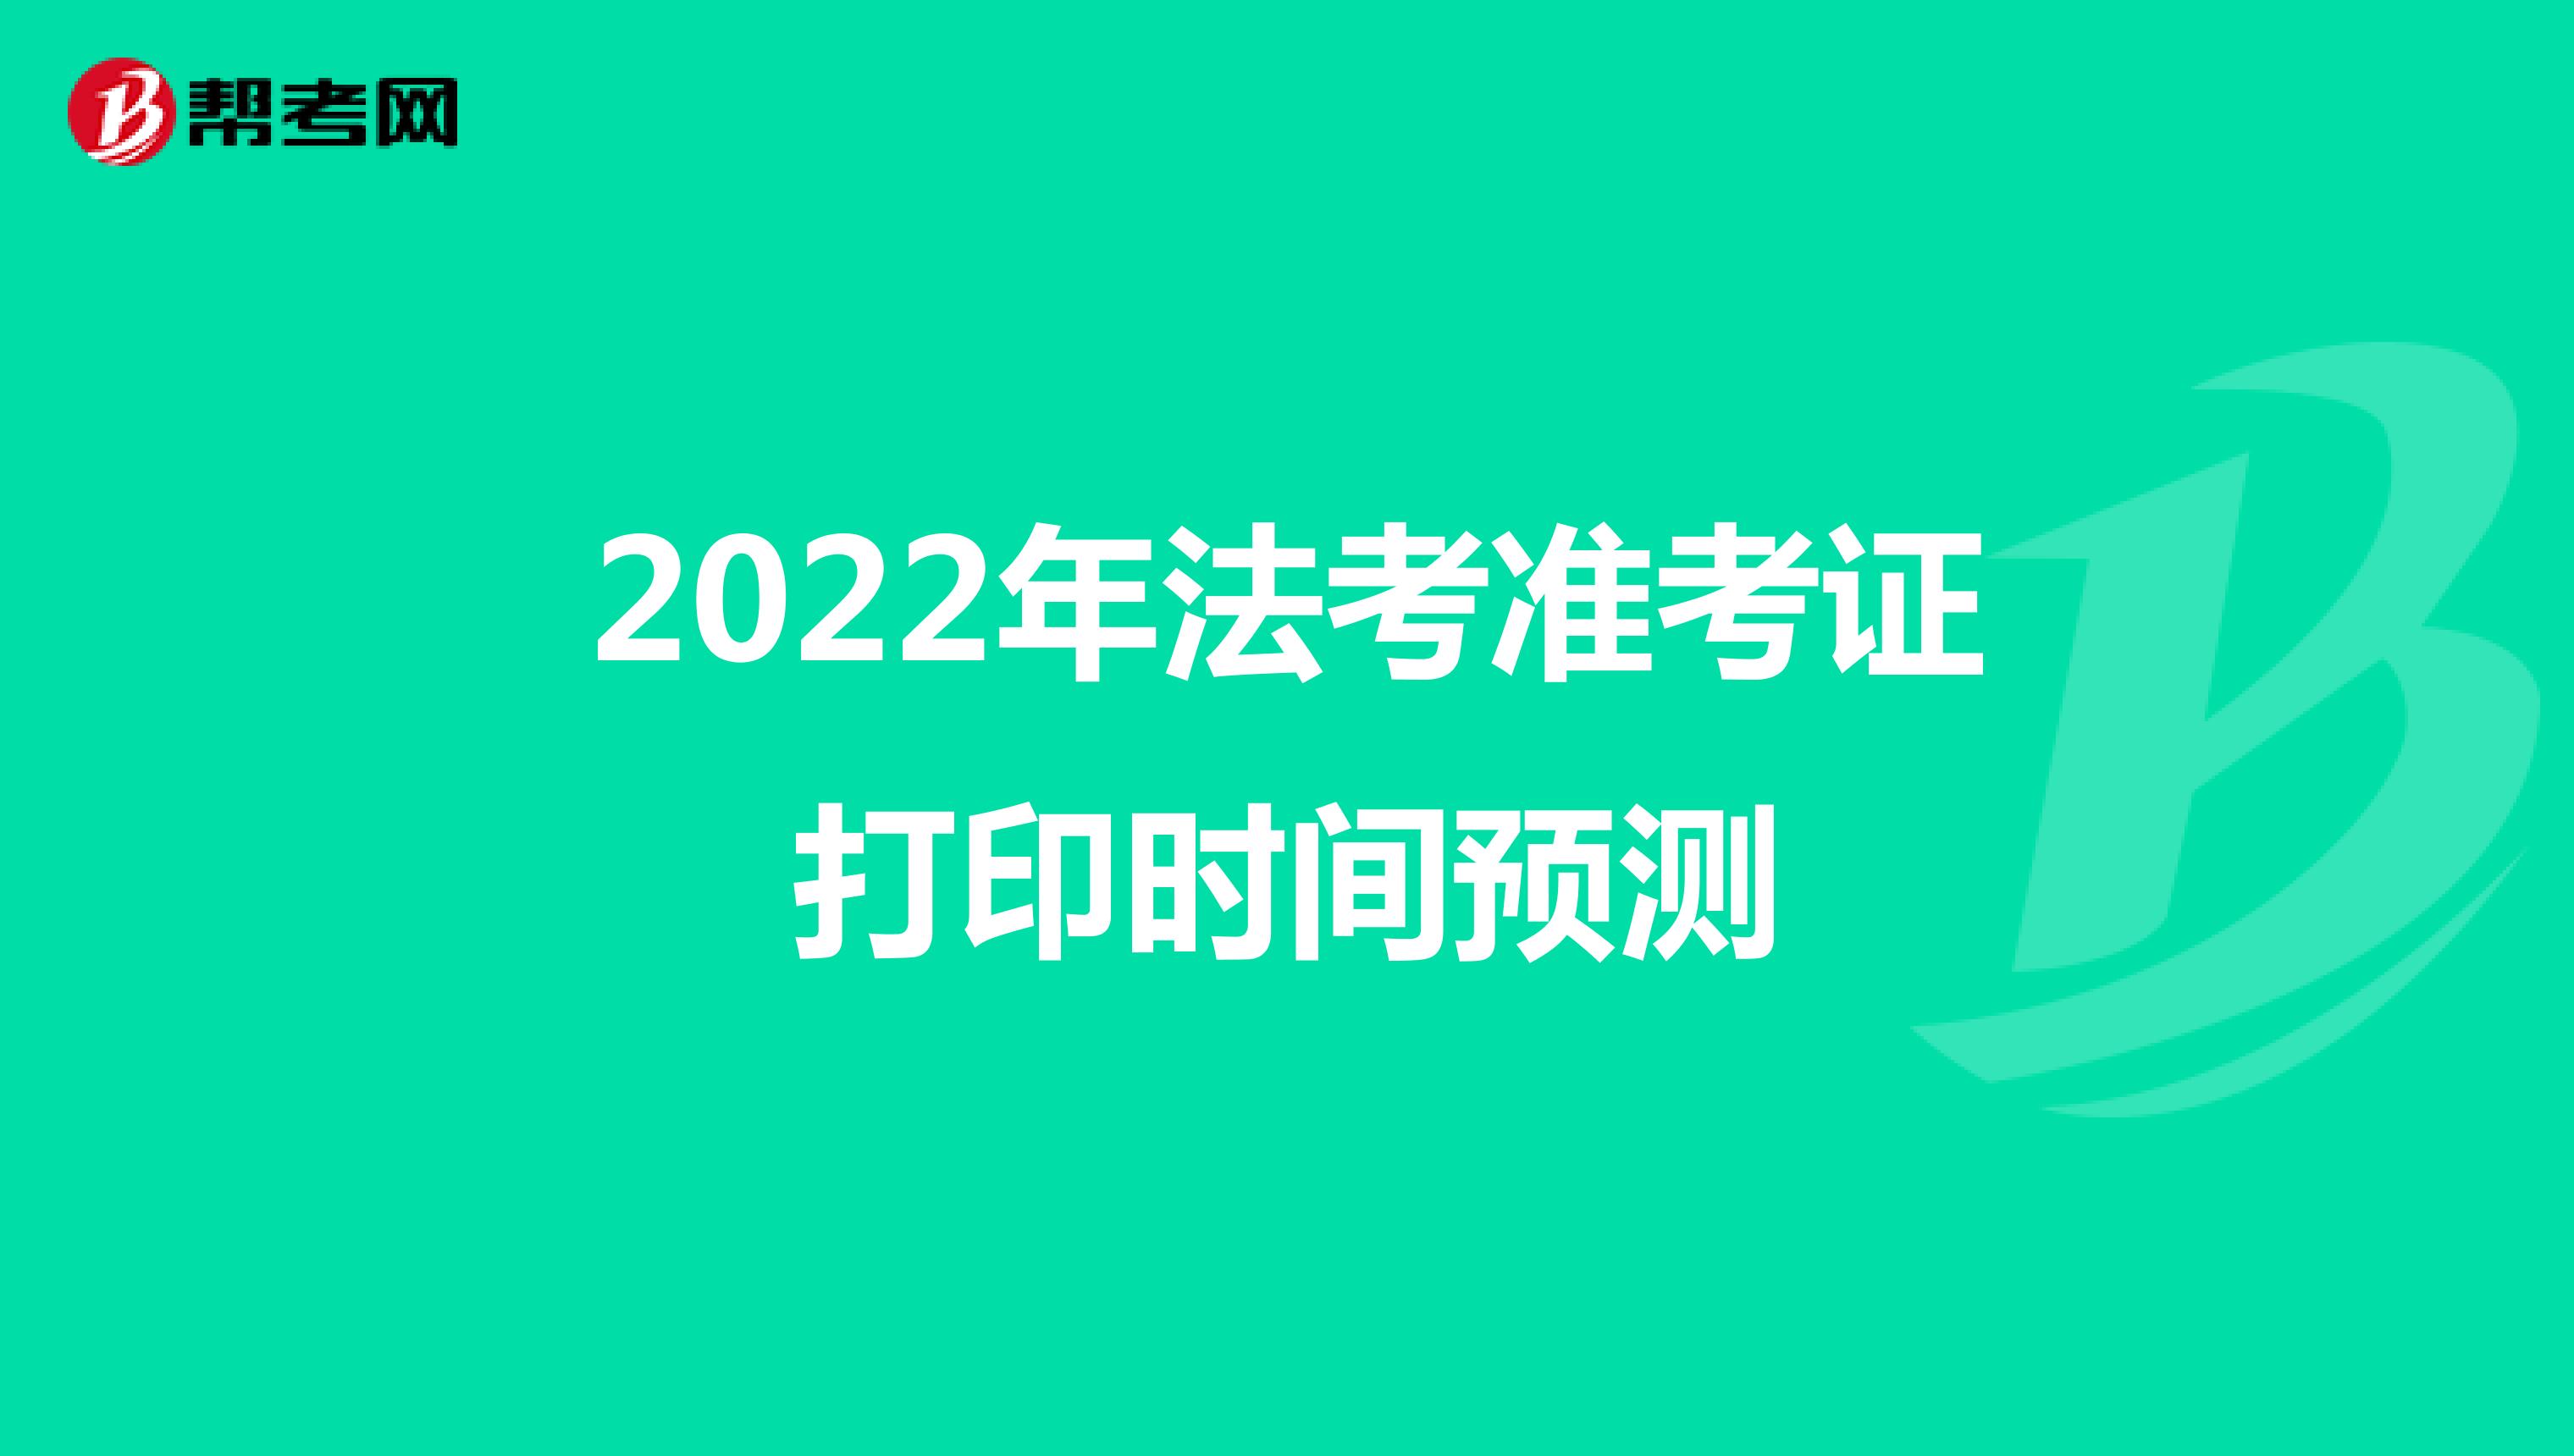 2022年法考准考证打印时间预测